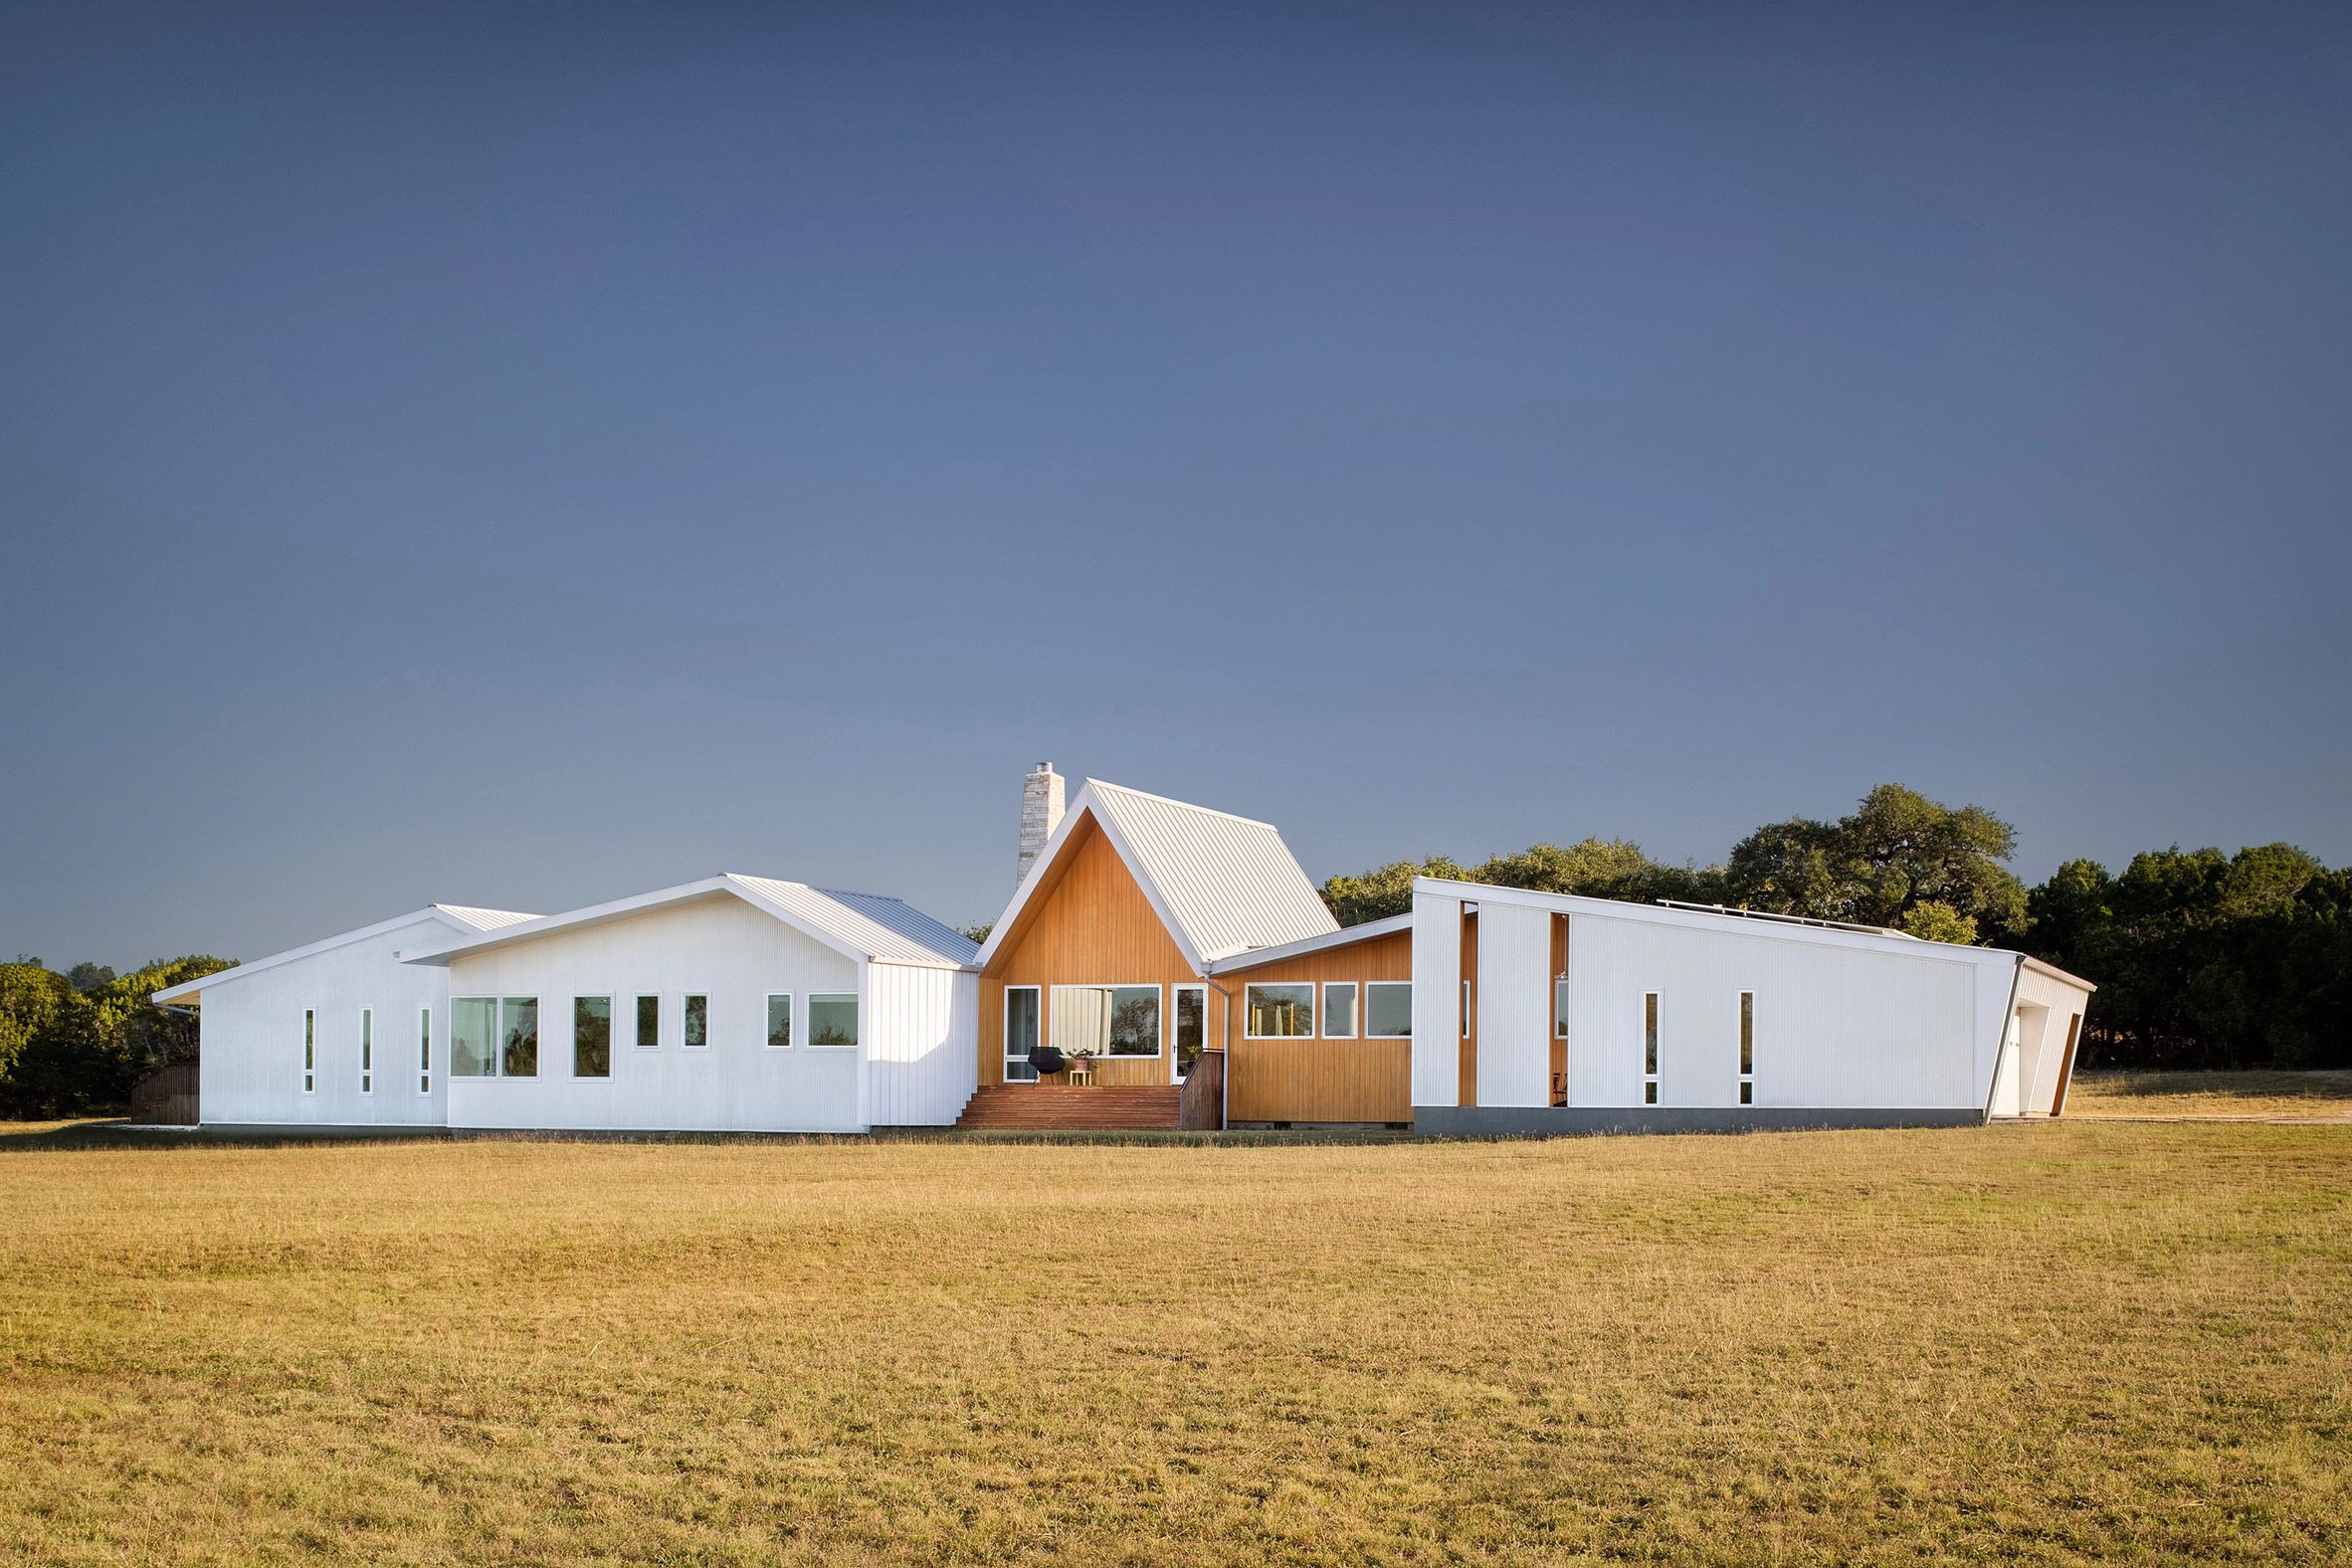 Hill Country House jako ekologiczny prototyp w wiejskiej okolicy Teksasu